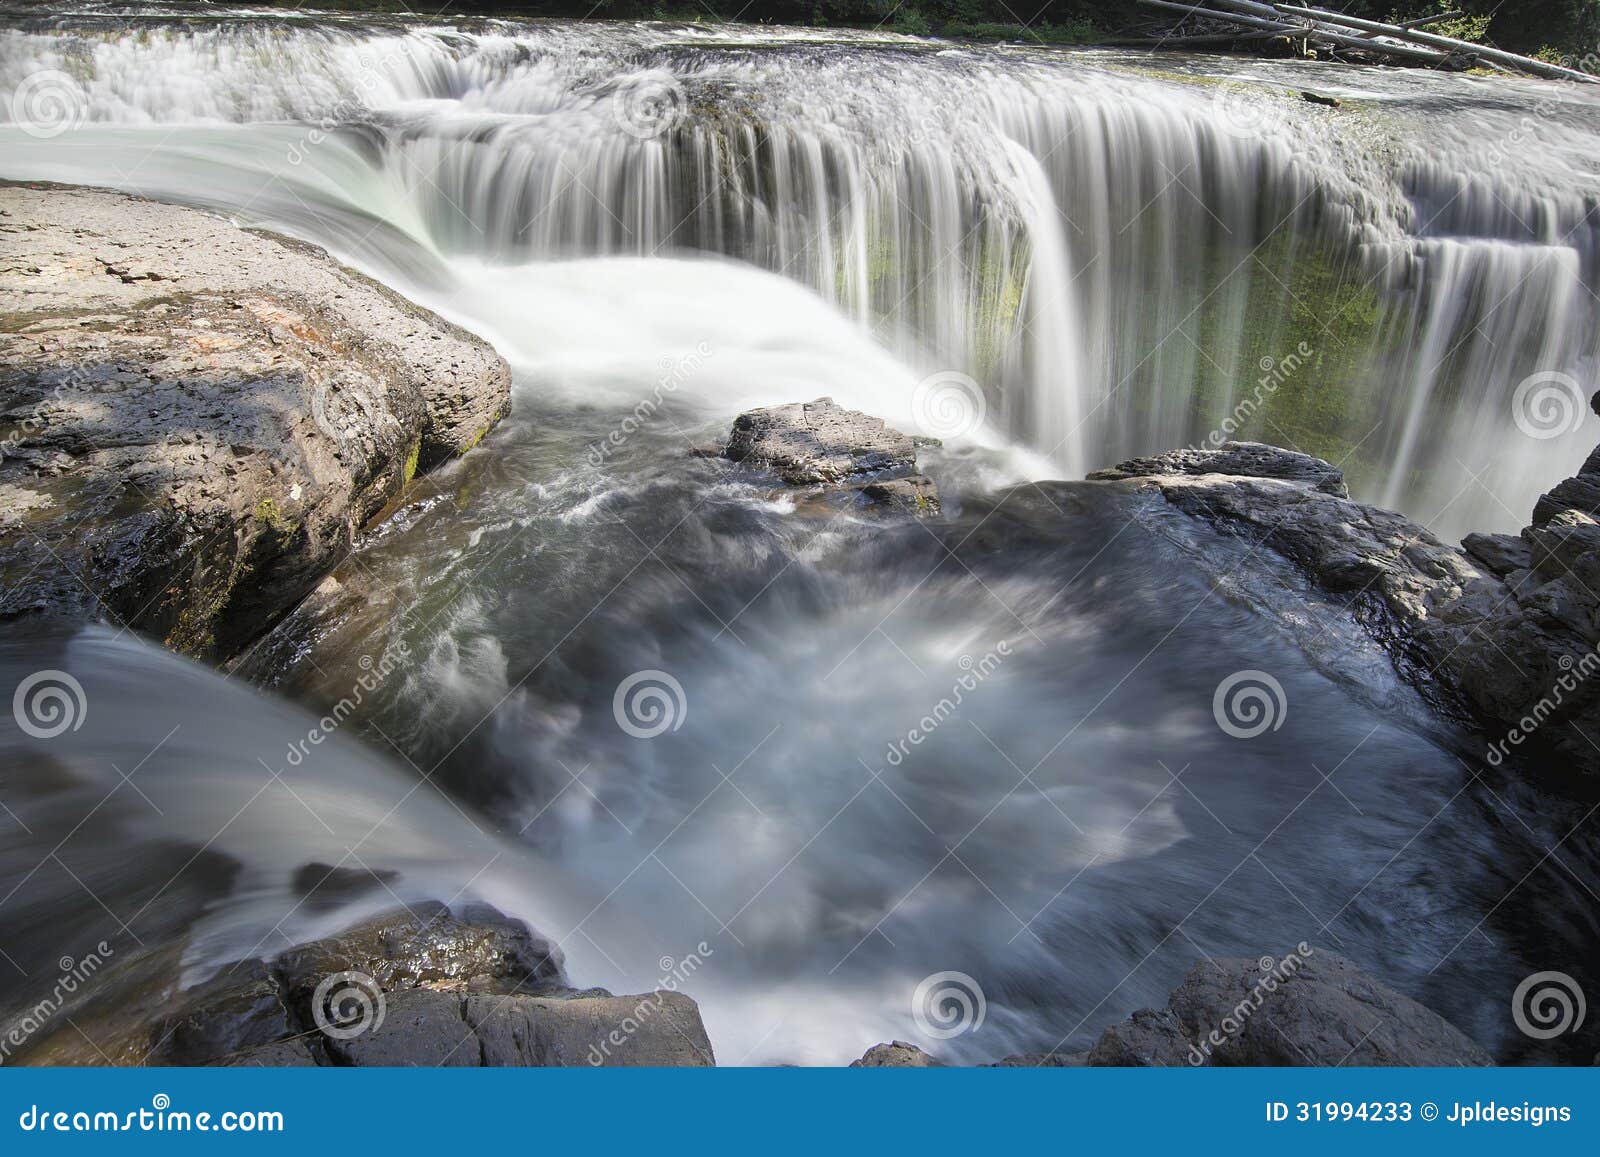 lower lewis river falls closeup